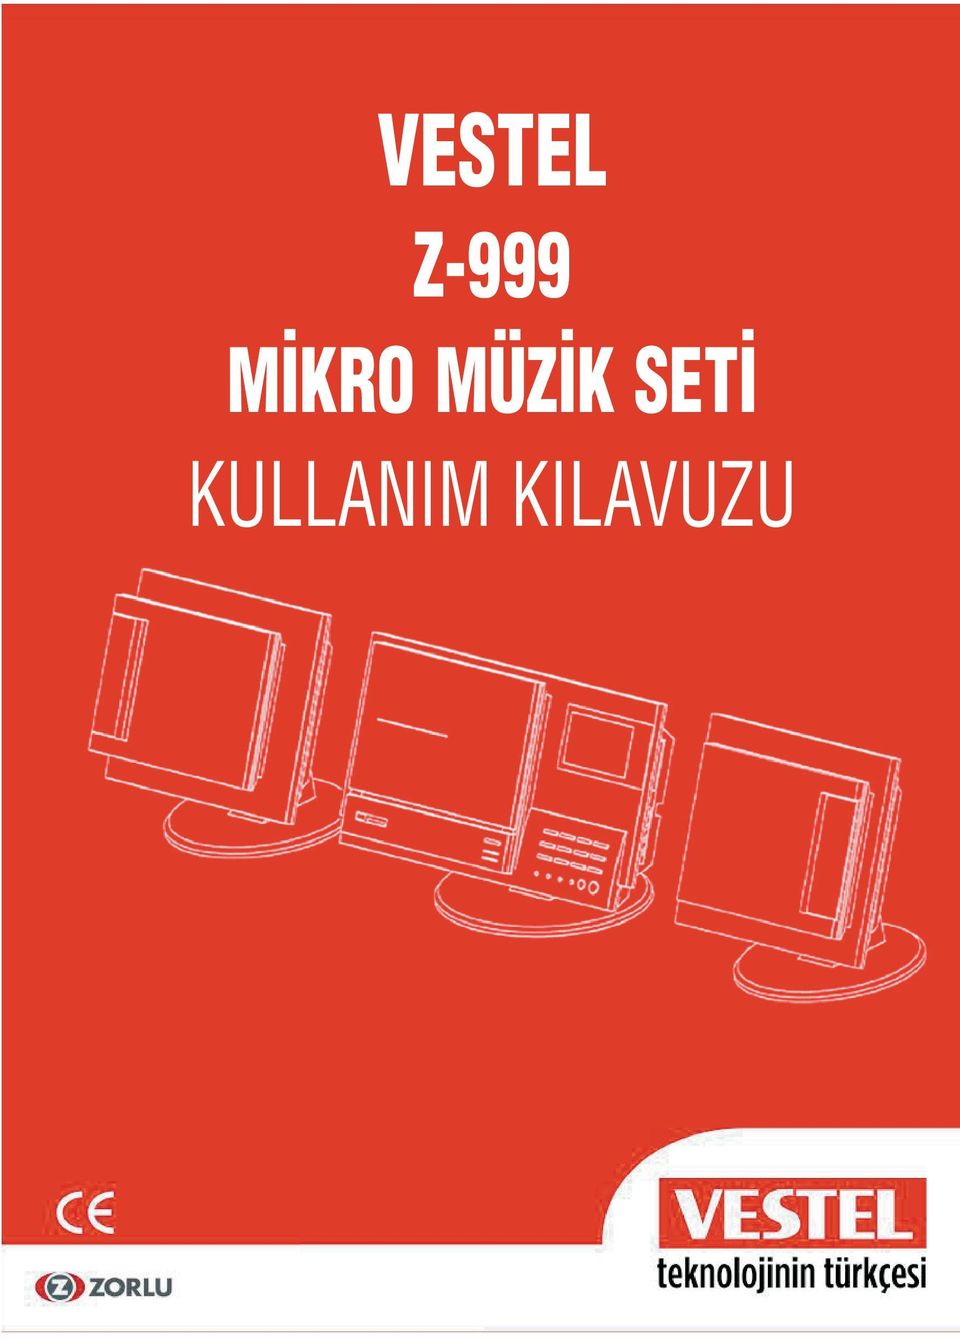 VESTEL Z-999 M KRO MÜZ K SET KULLANIM KILAVUZU - PDF Ücretsiz indirin